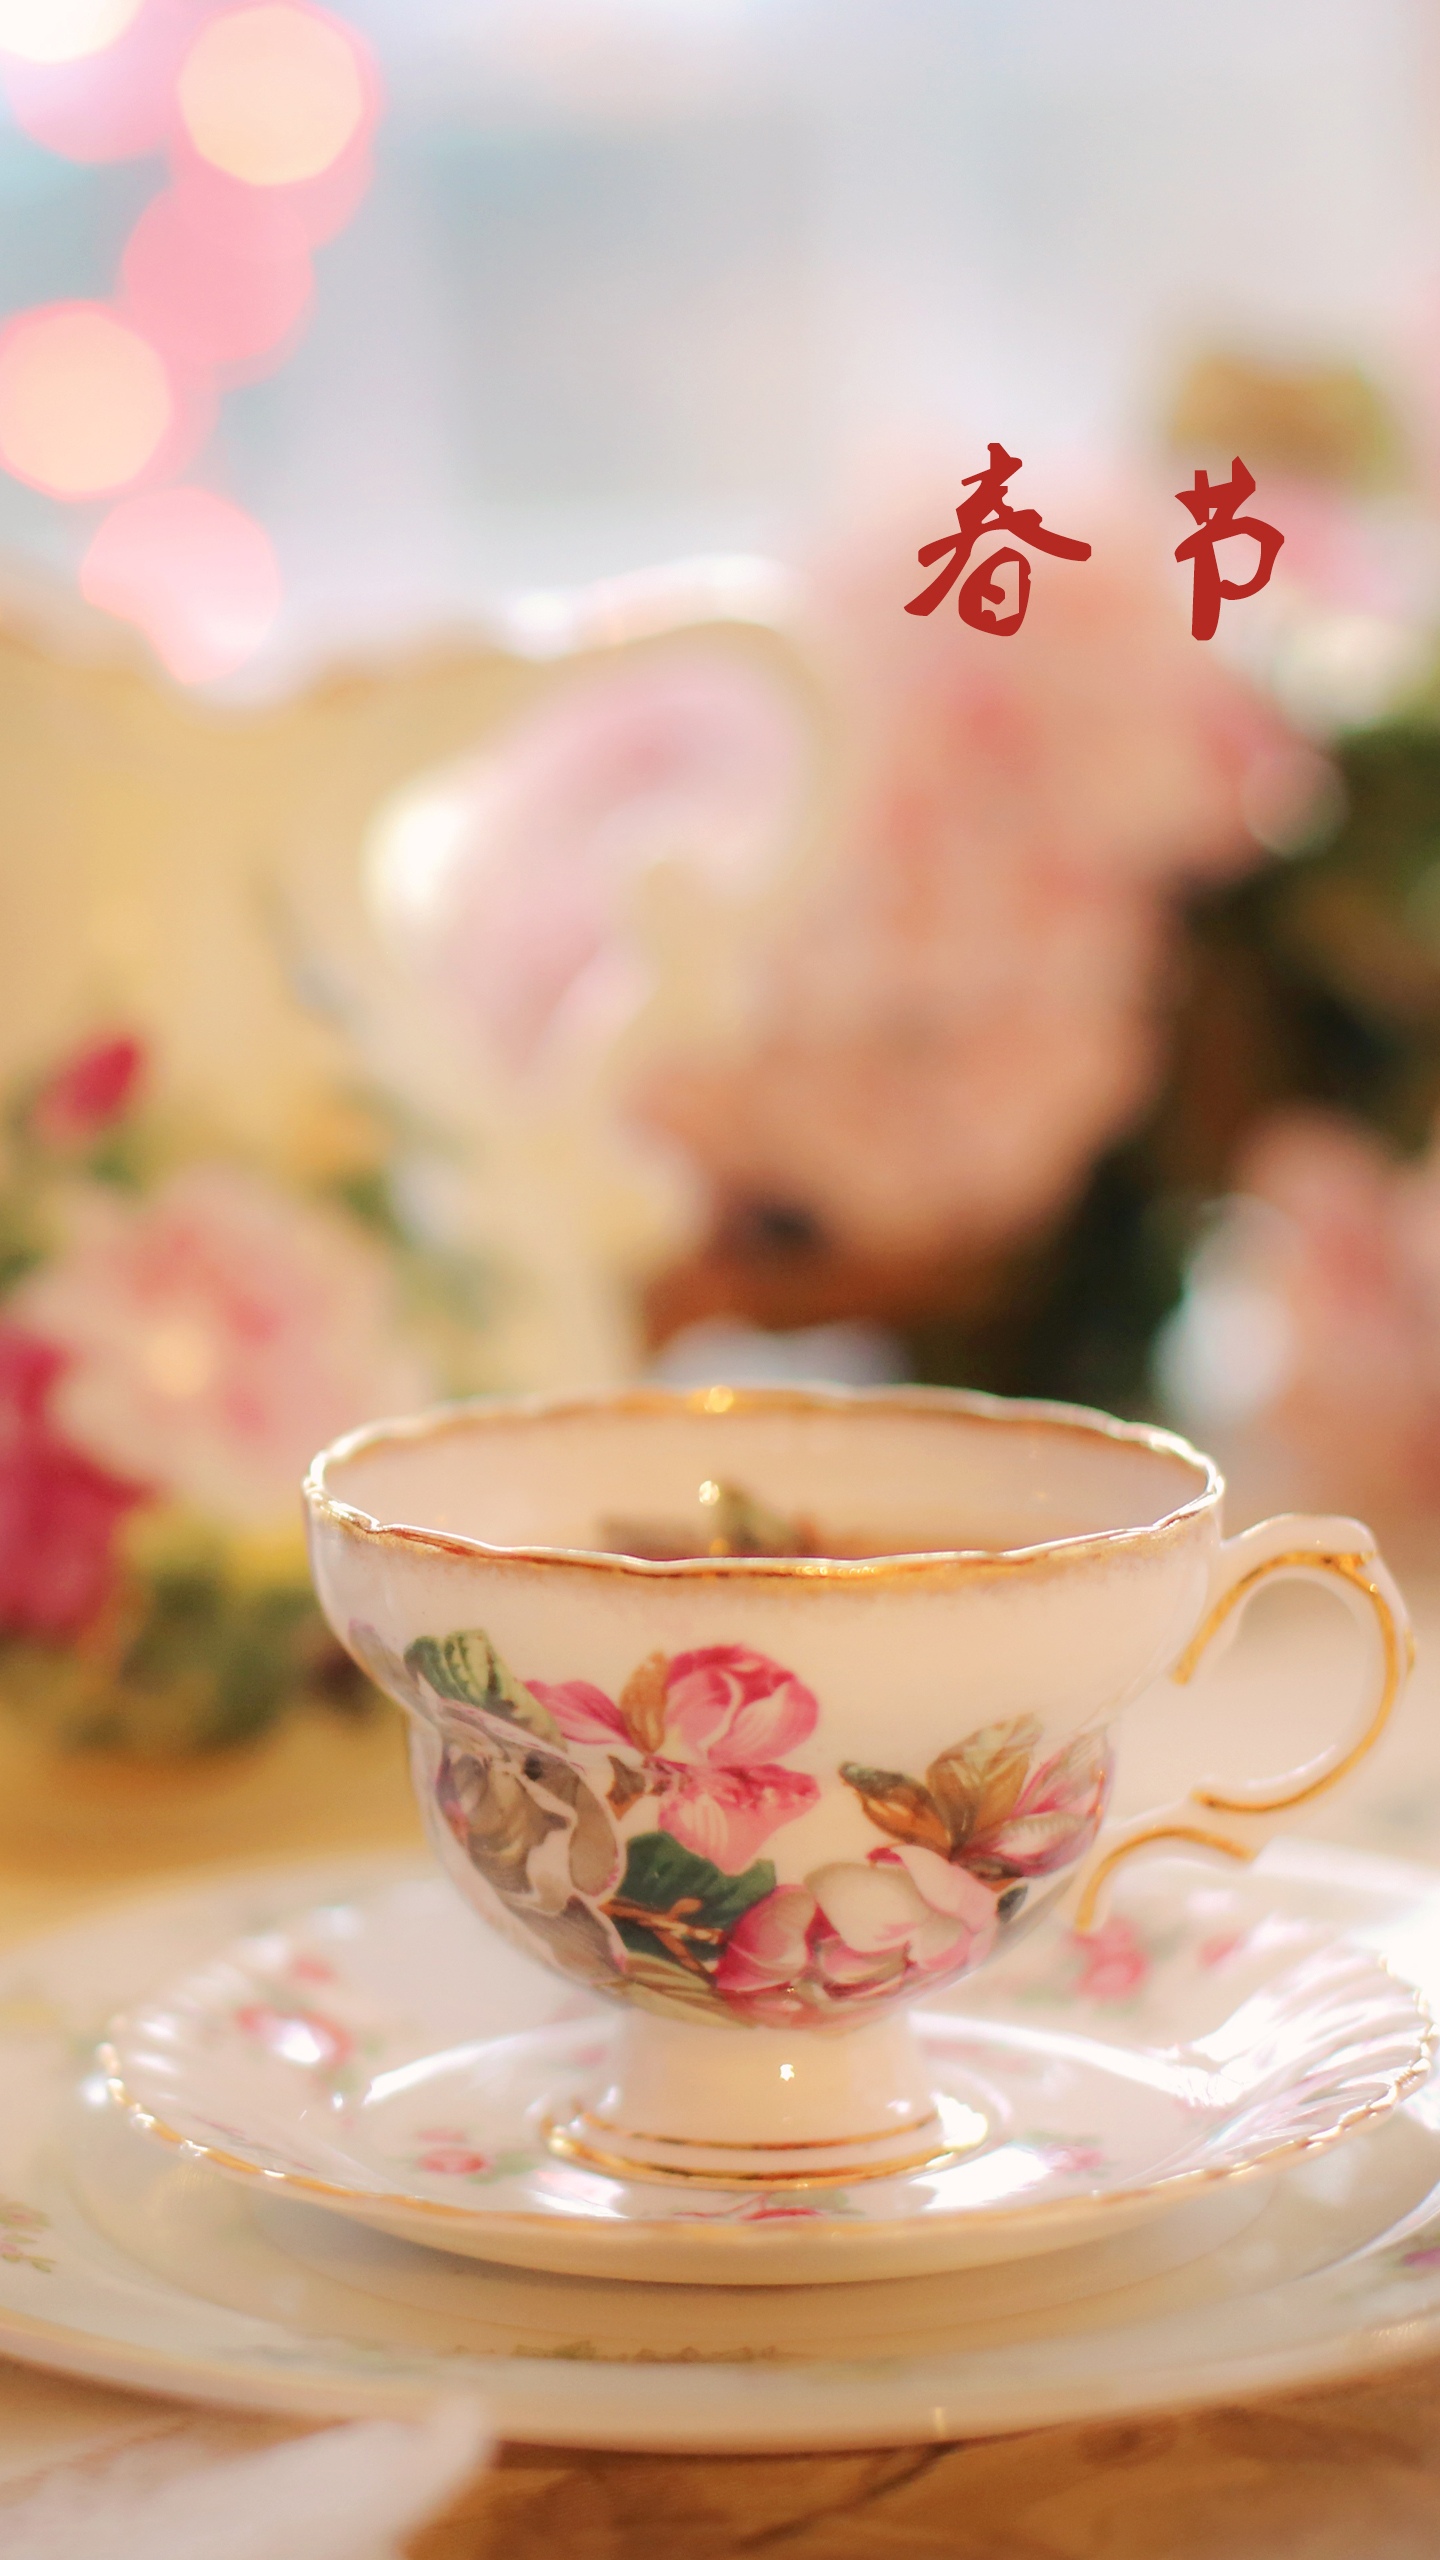 春节到 喝茶去